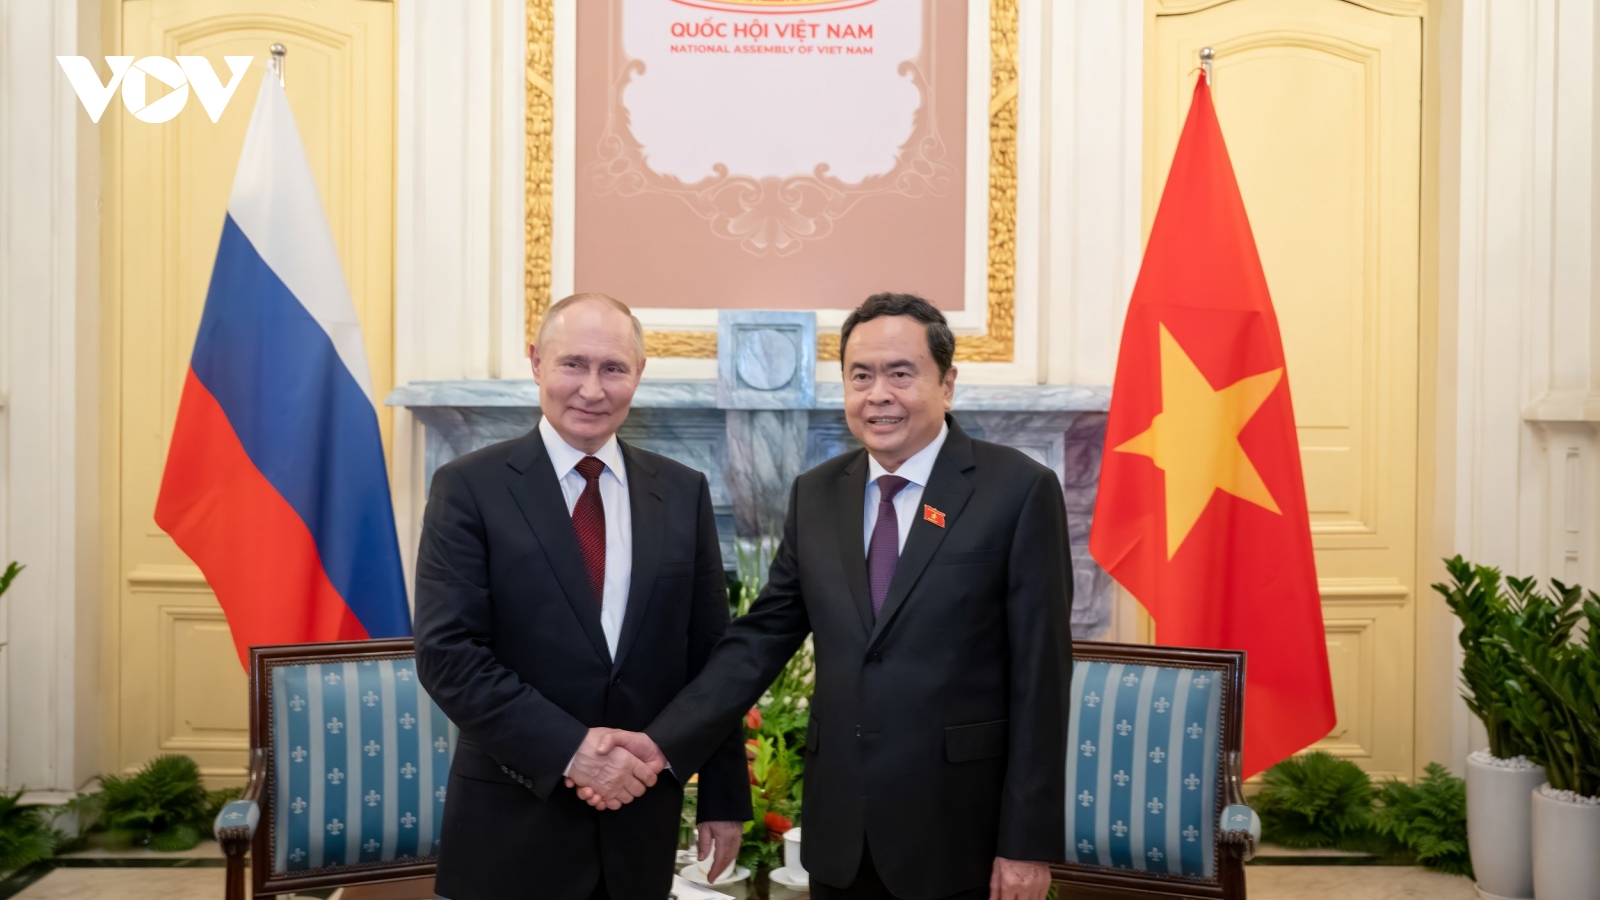 Chủ tịch Quốc hội Trần Thanh Mẫn hội kiến Tổng thống Nga Vladimir Putin